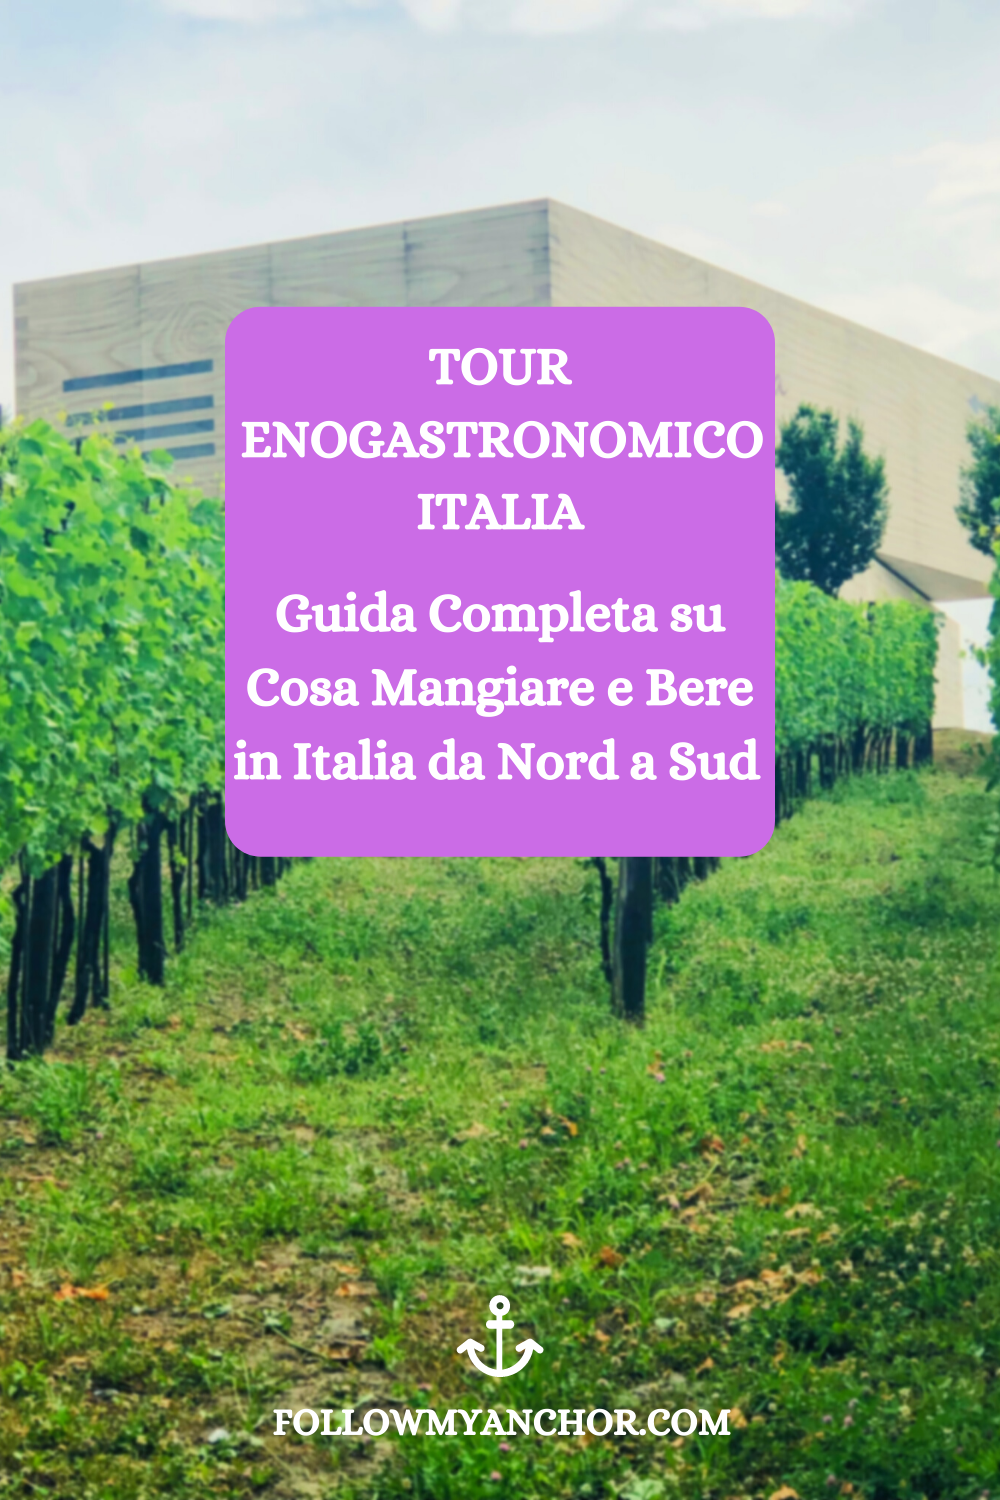 TOUR ENOGASTRONOMICO ITALIA: GUIDA COMPLETA SU COSA MANGIARE E BERE IN ITALIA DA NORD A SUD